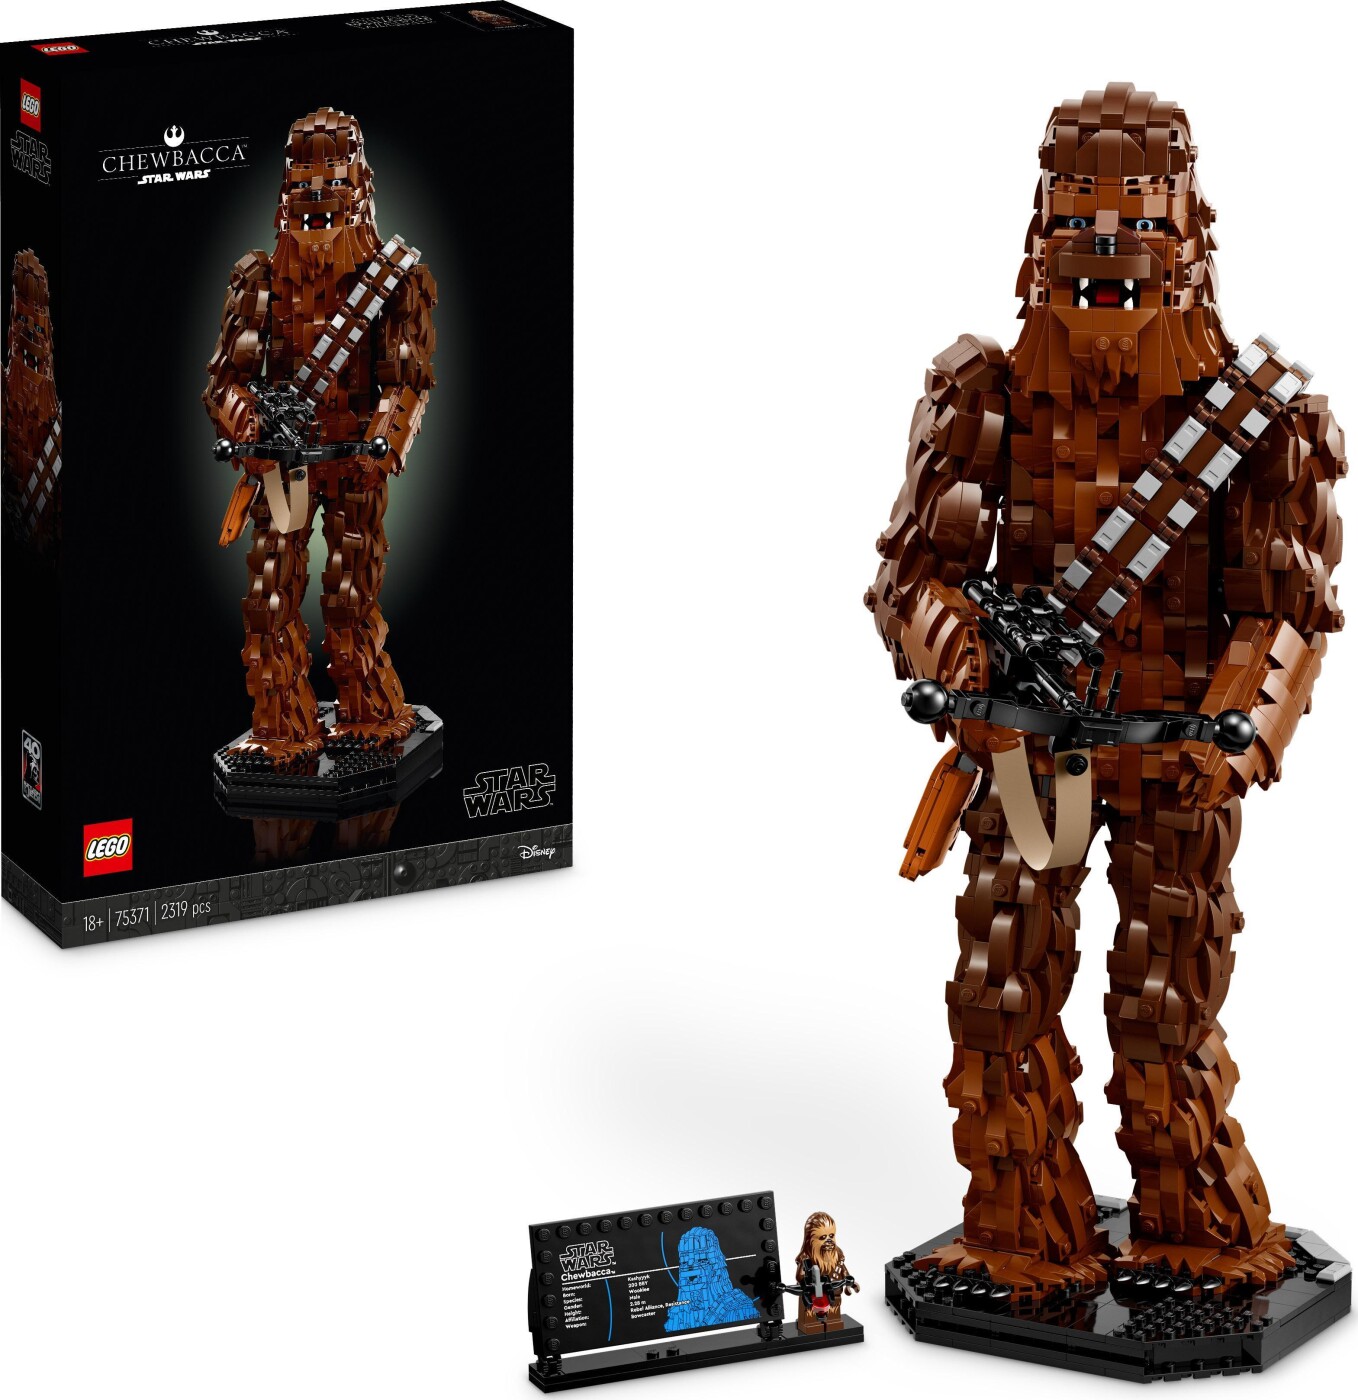 Billede af Lego Star Wars - Chewbacca - 75371 hos Gucca.dk